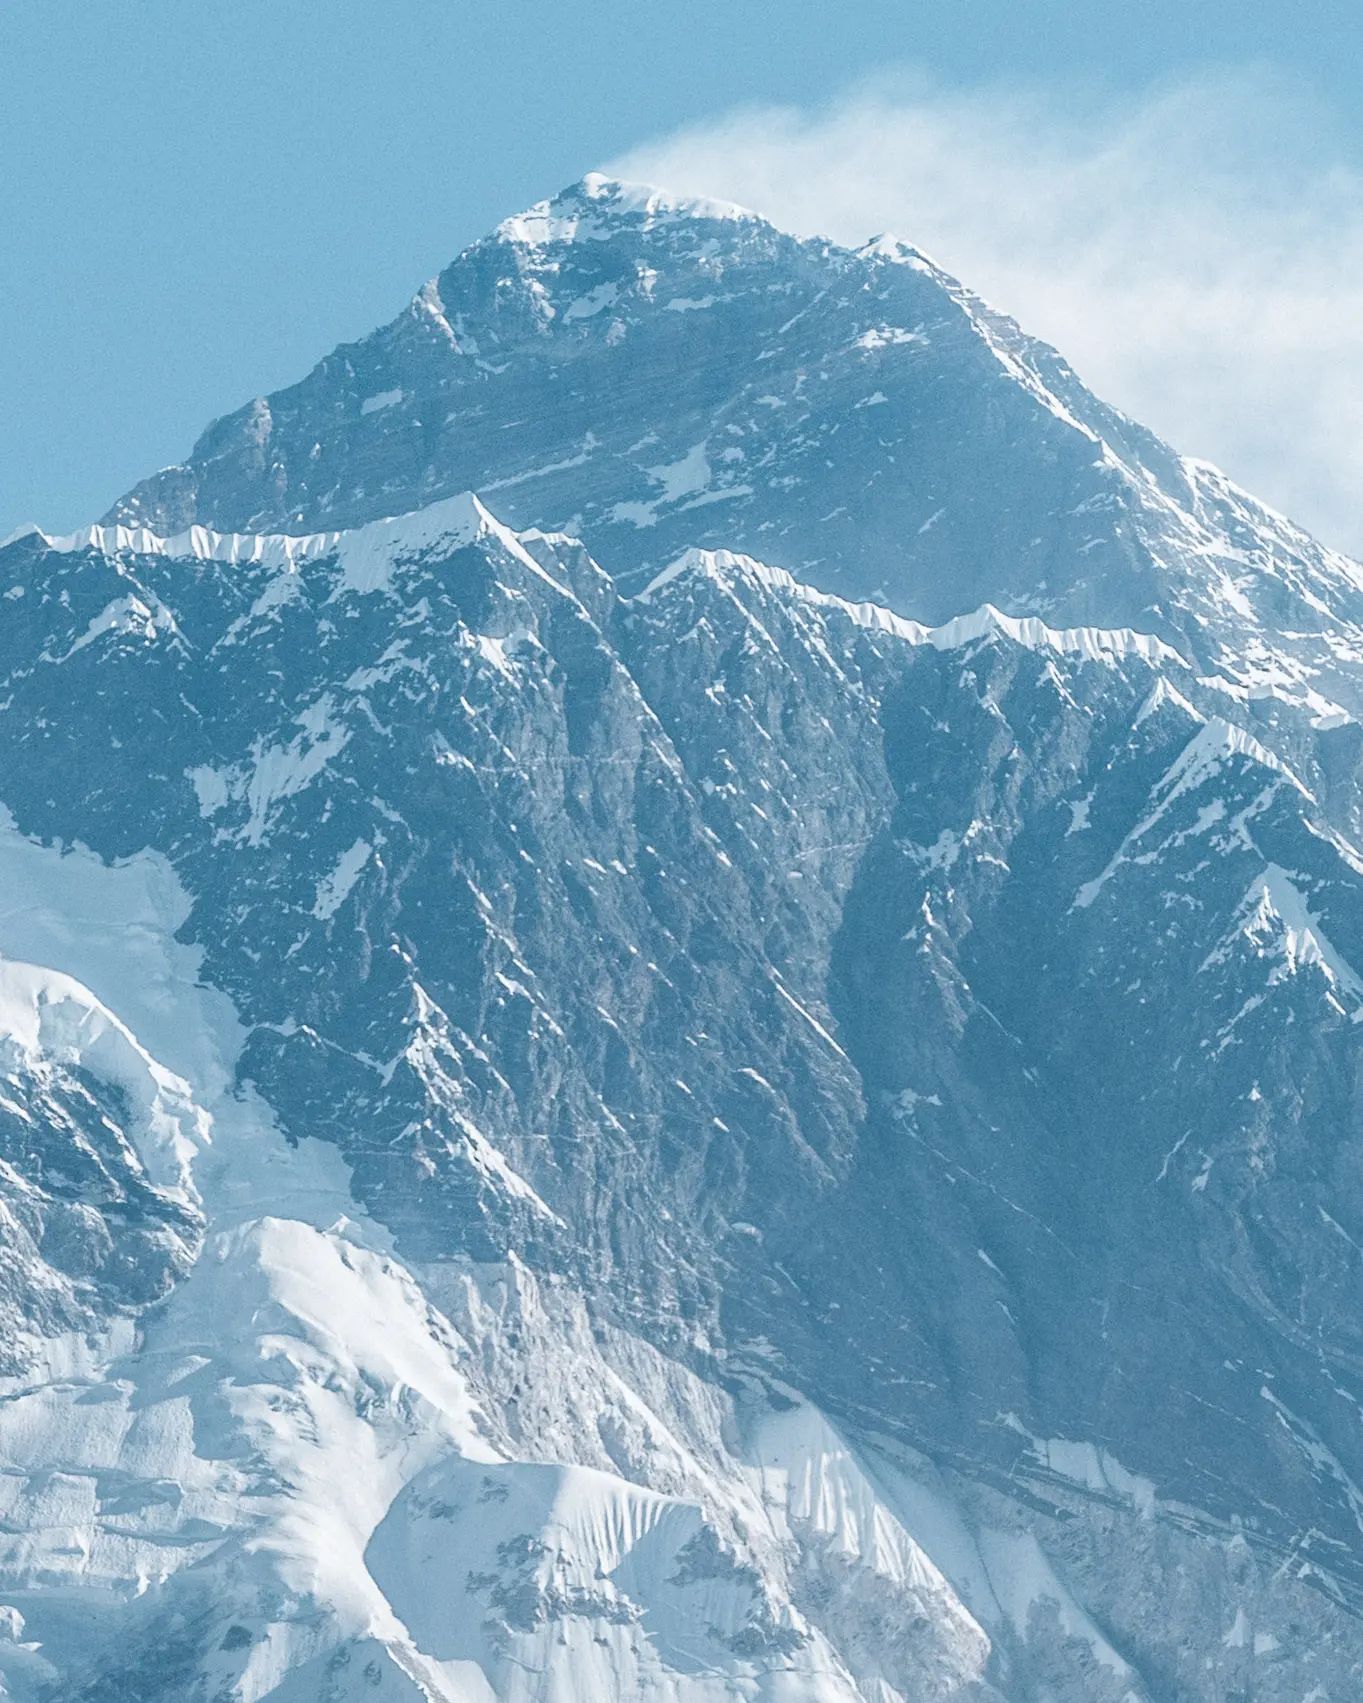 Сильный ветер продолжает бушевать на Эвересте. Фото Jost Kobusch, февраль 2022